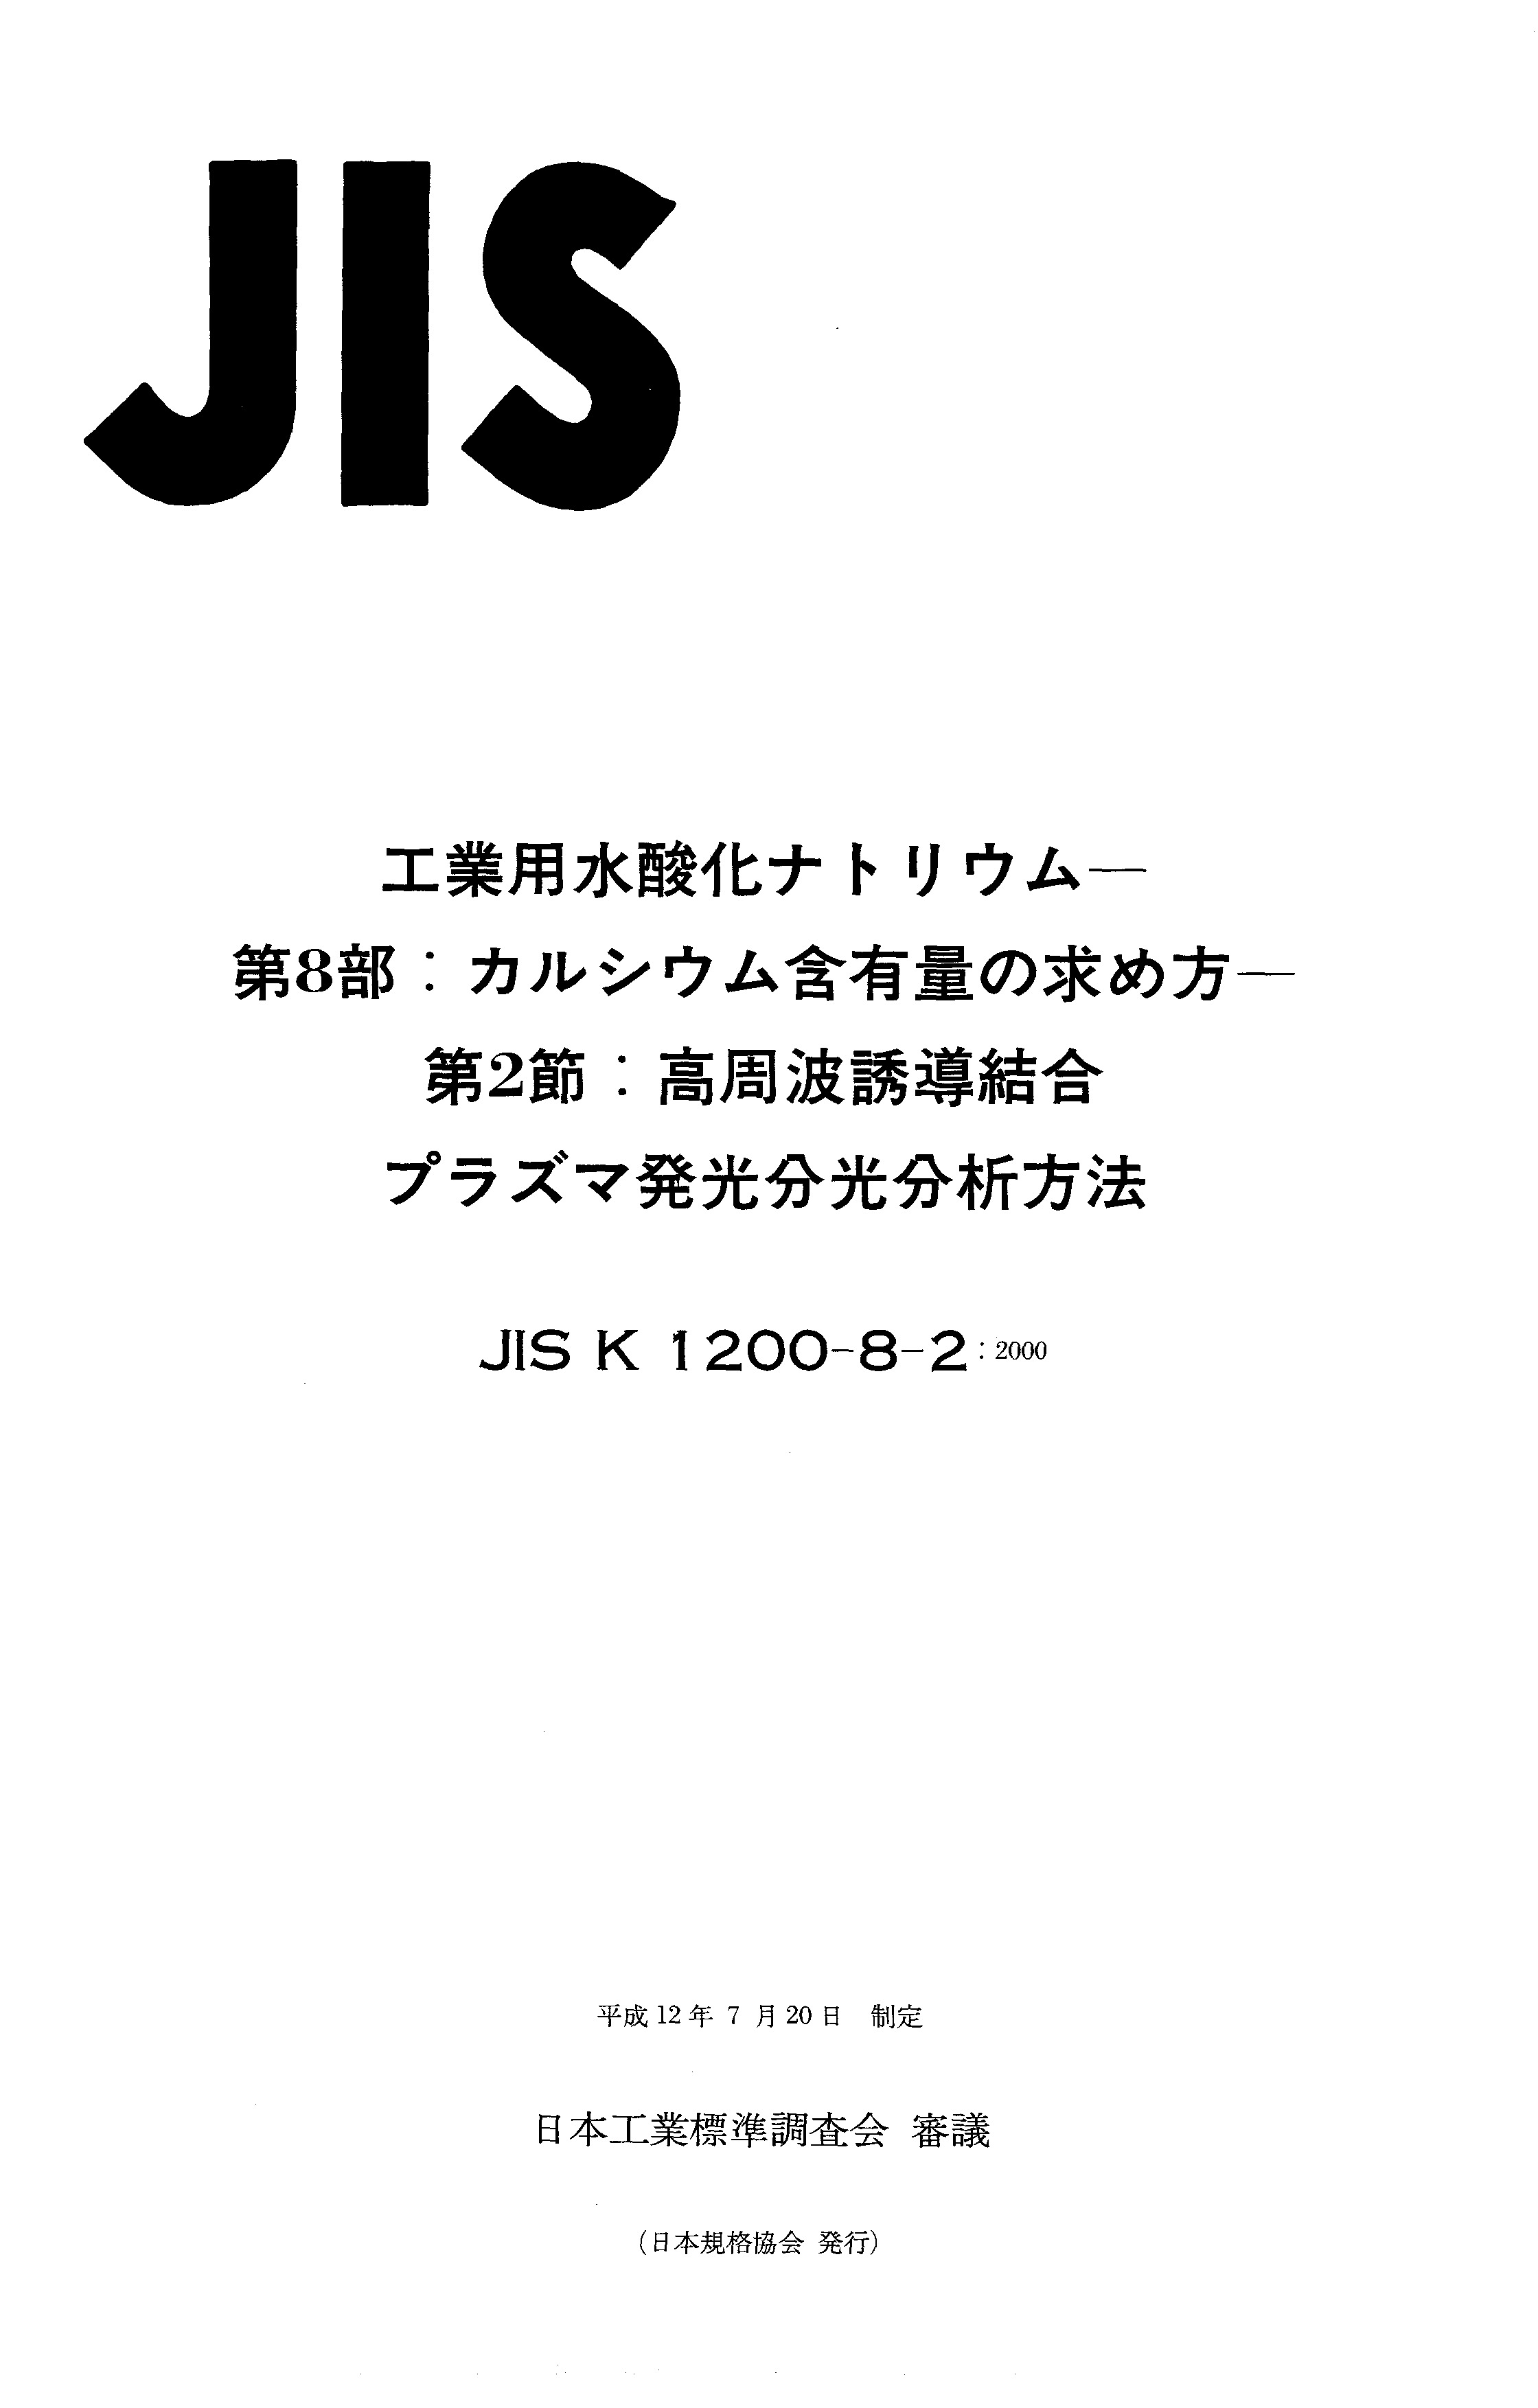 JIS K 1200-8-2:2000封面图